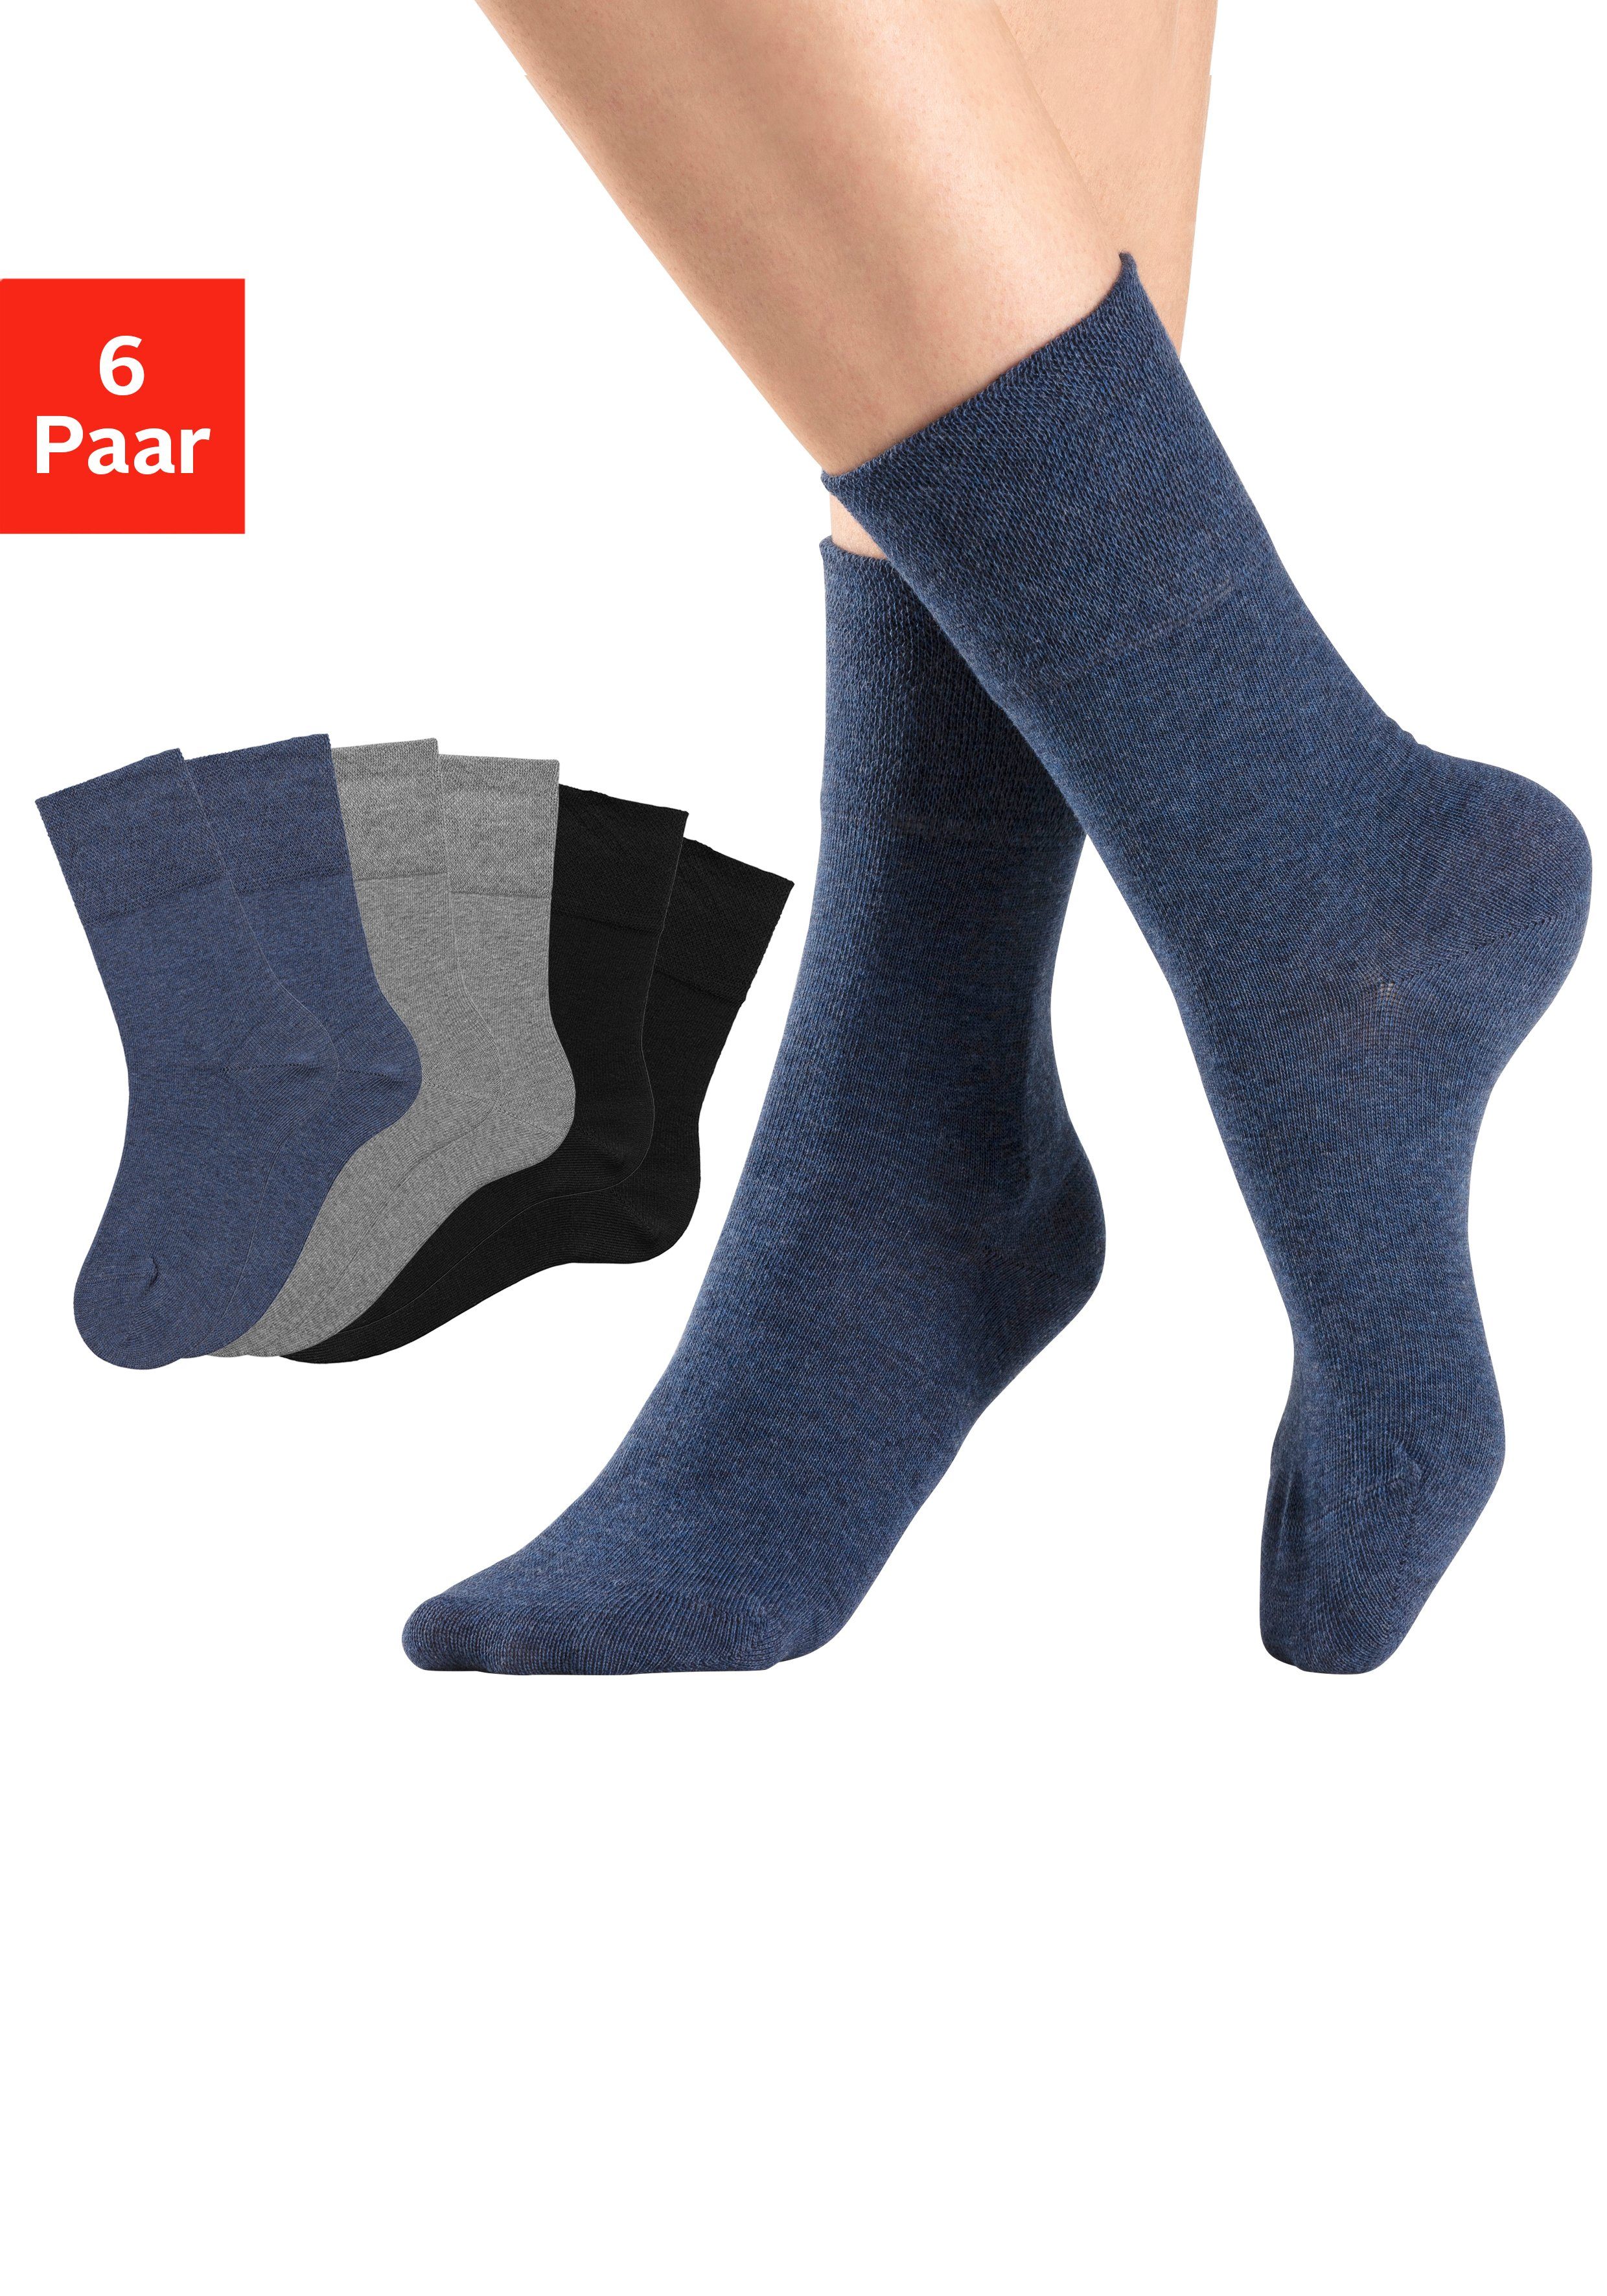 H.I.S Socken (Set, 6-Paar) mit Komfortbund auch für Diabetiker geeignet 2x jeans, 2x schwarz, 2x grau-meliert